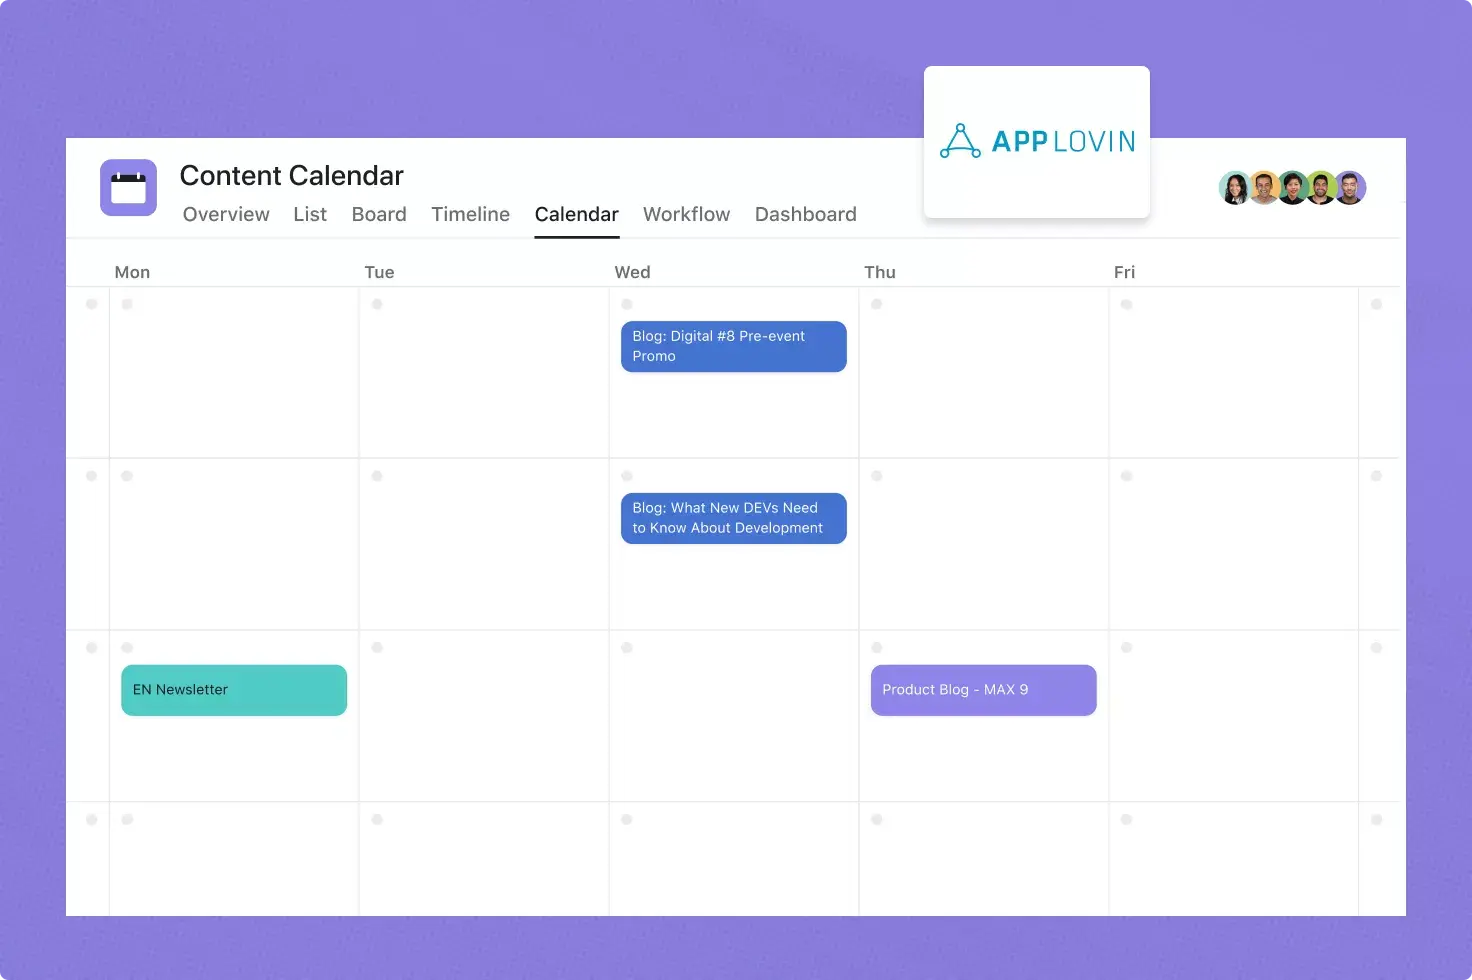 Szablon kalendarza publikacji firmy AppLovin – zrzut ekranu